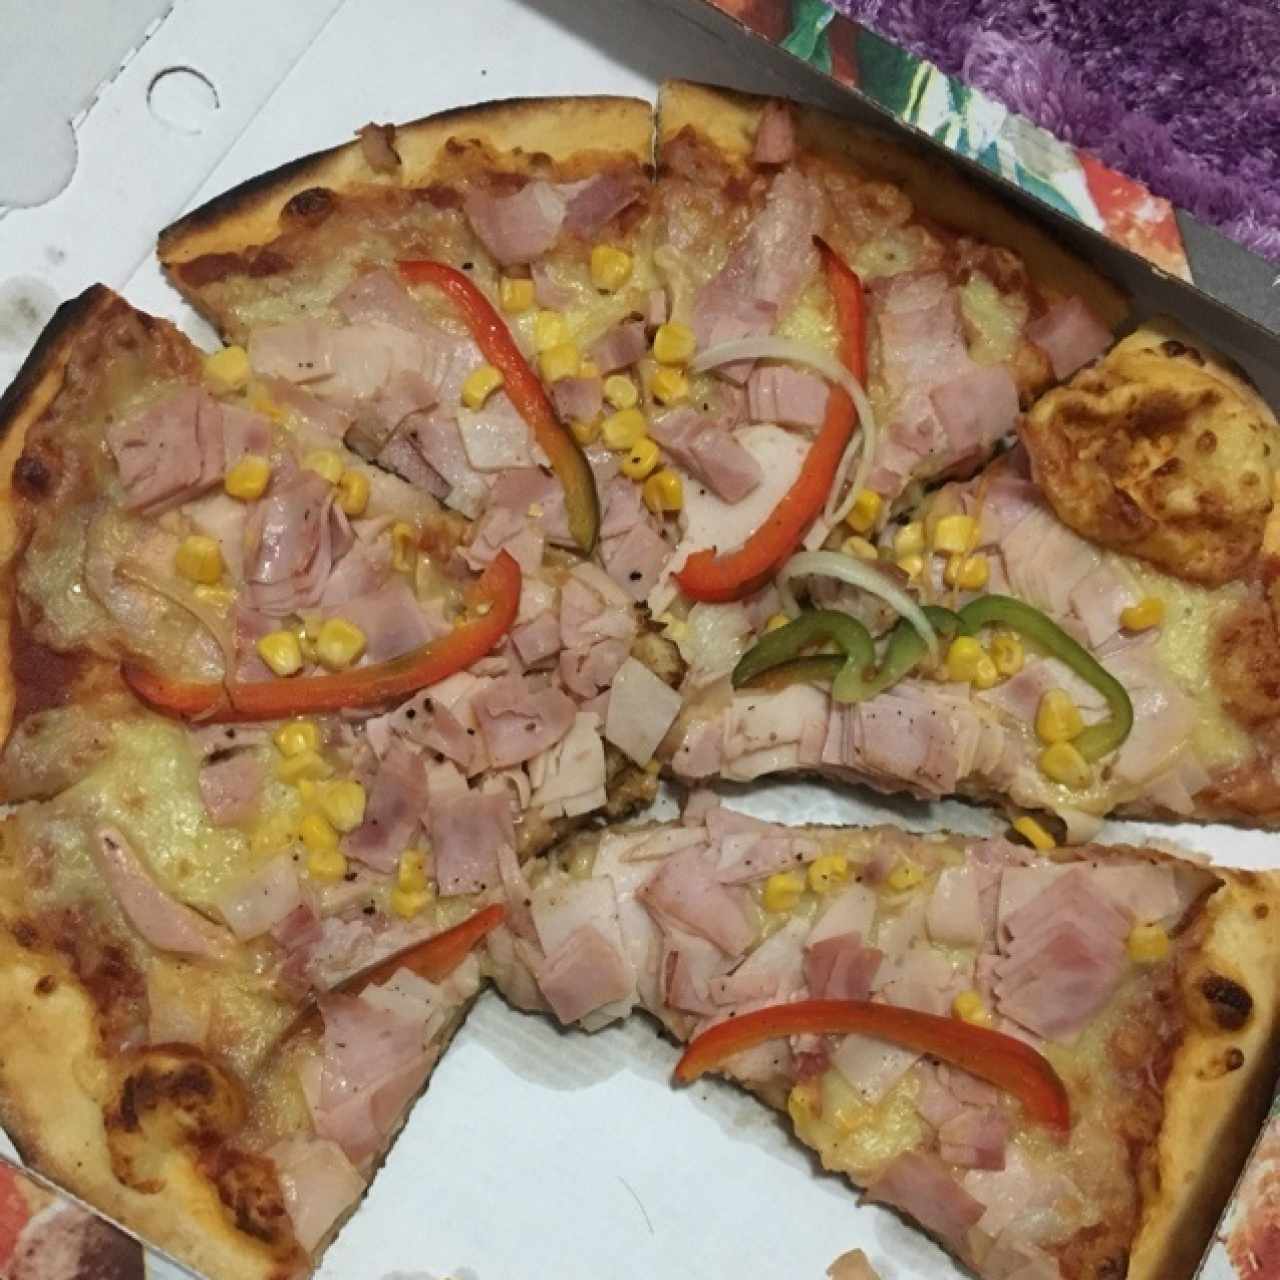 pizza tropical para llevar no pierde su sabor